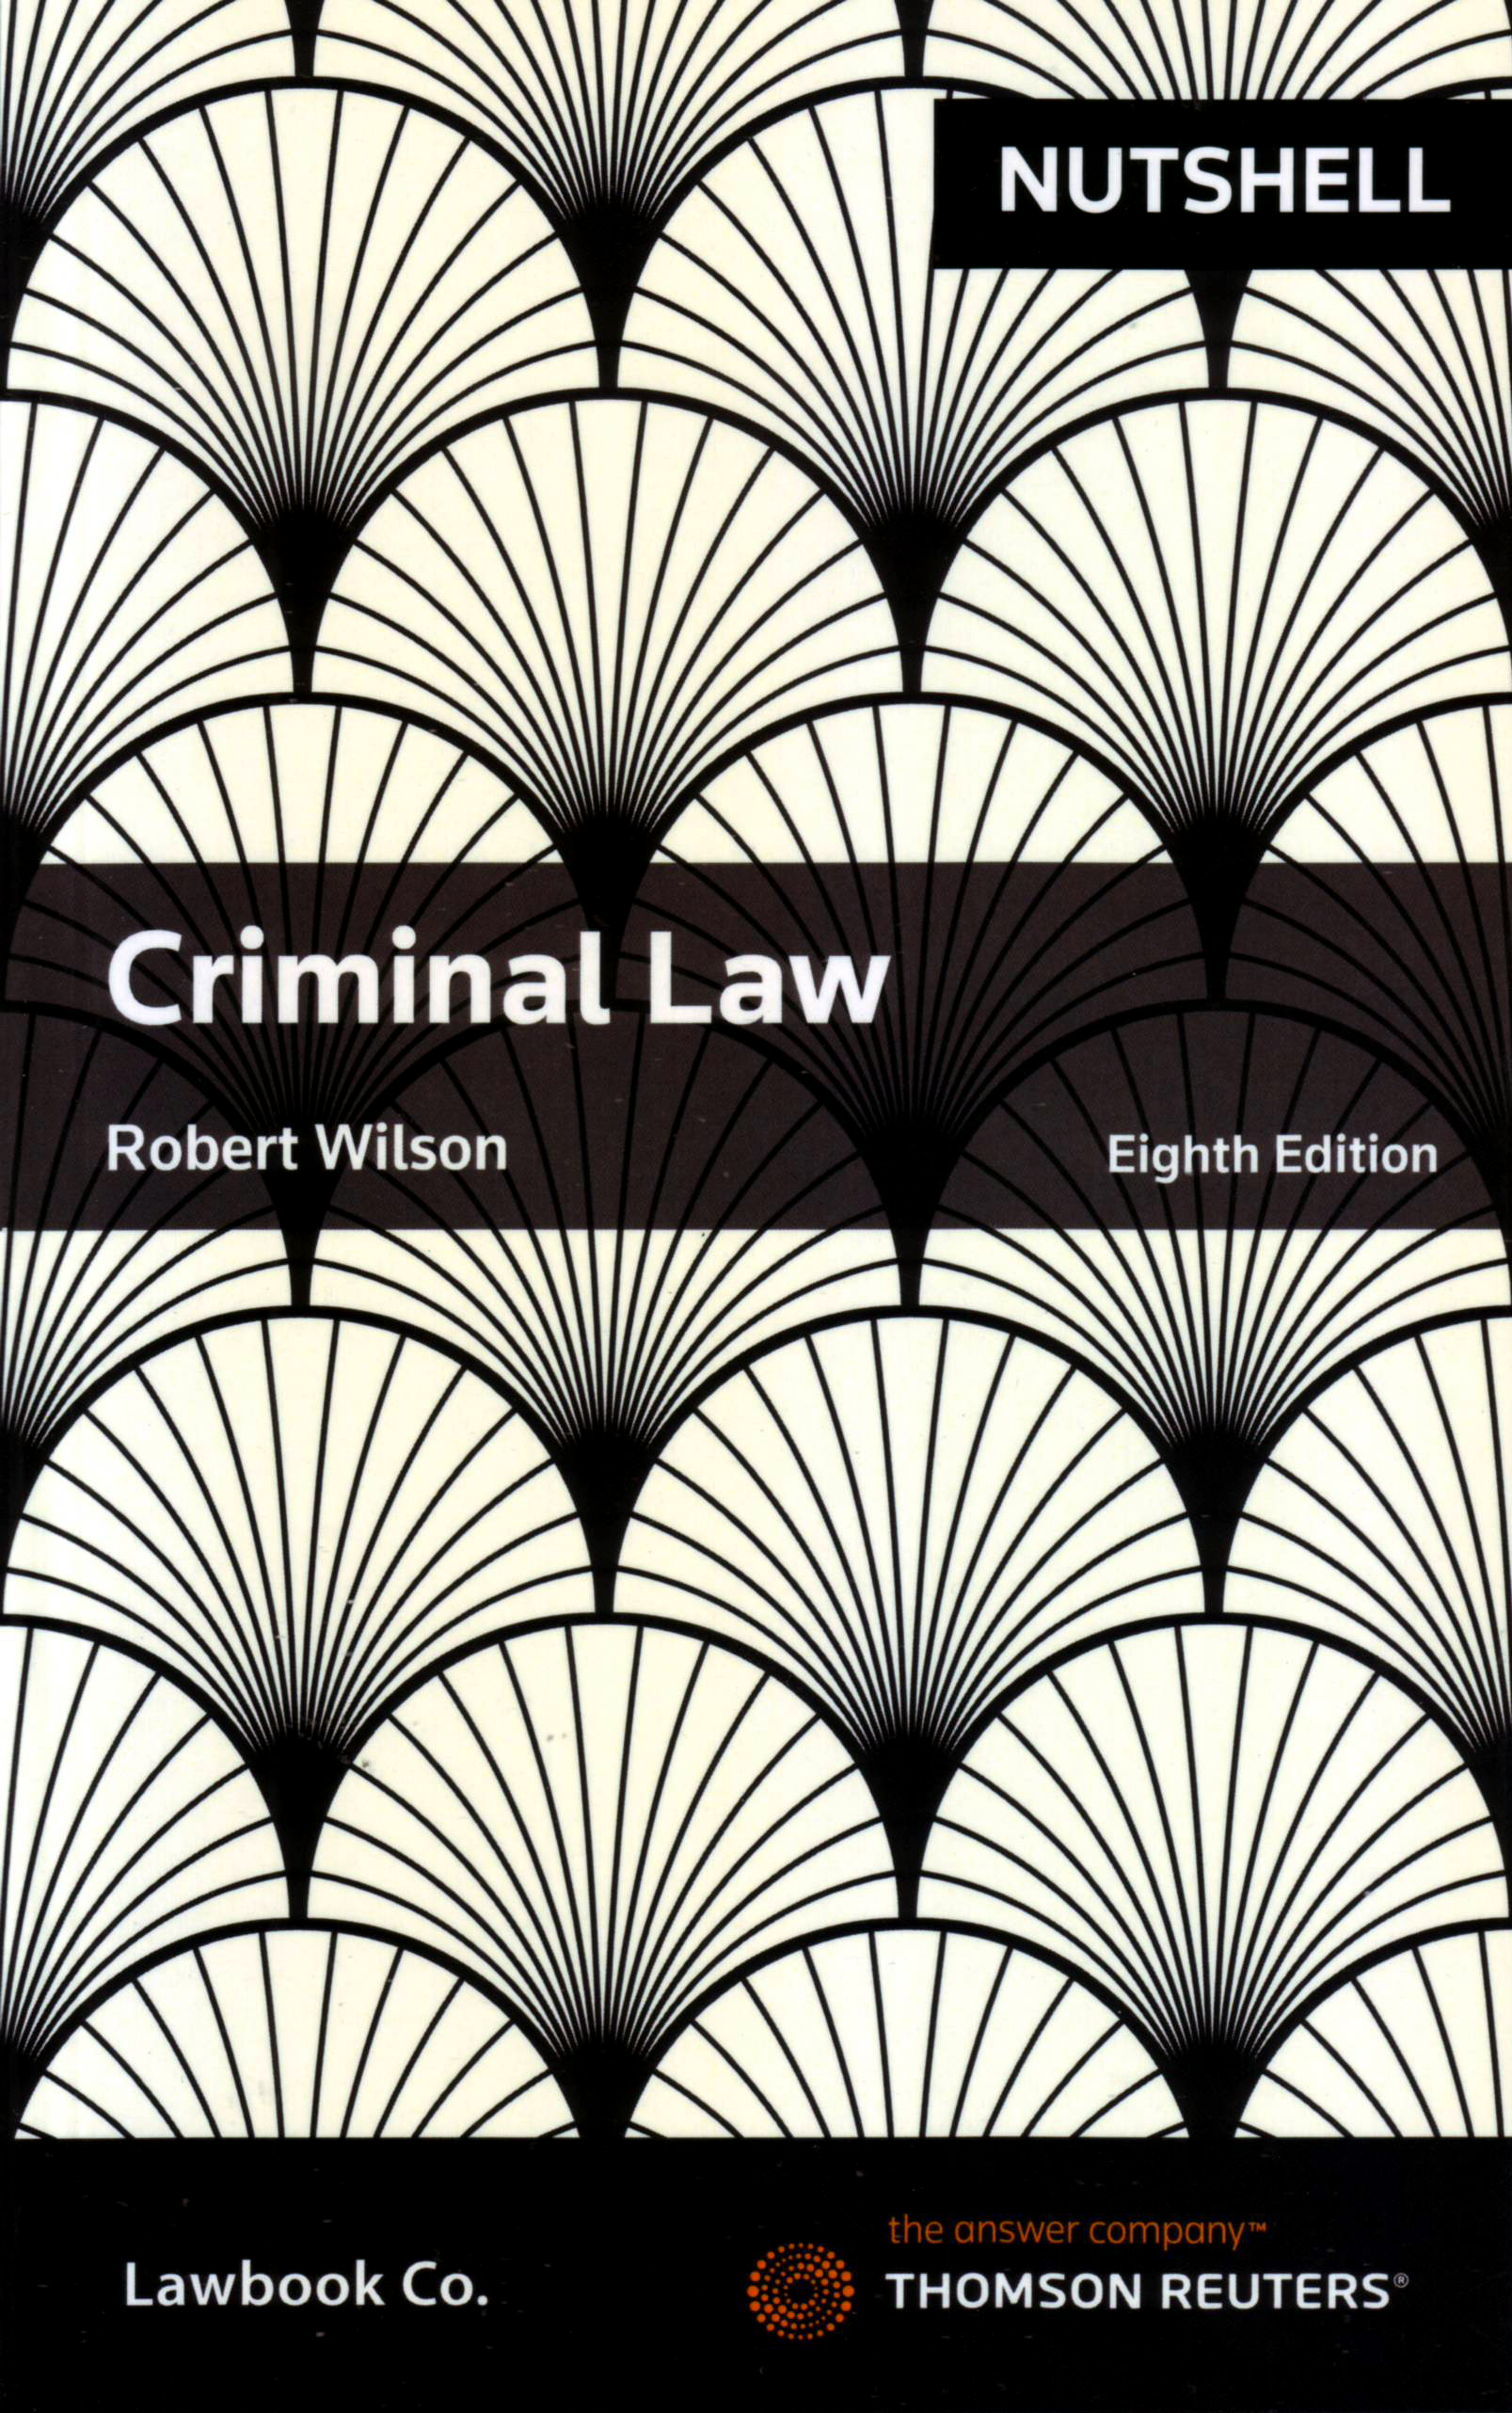 Criminal Law e8 (Nutshell Series)